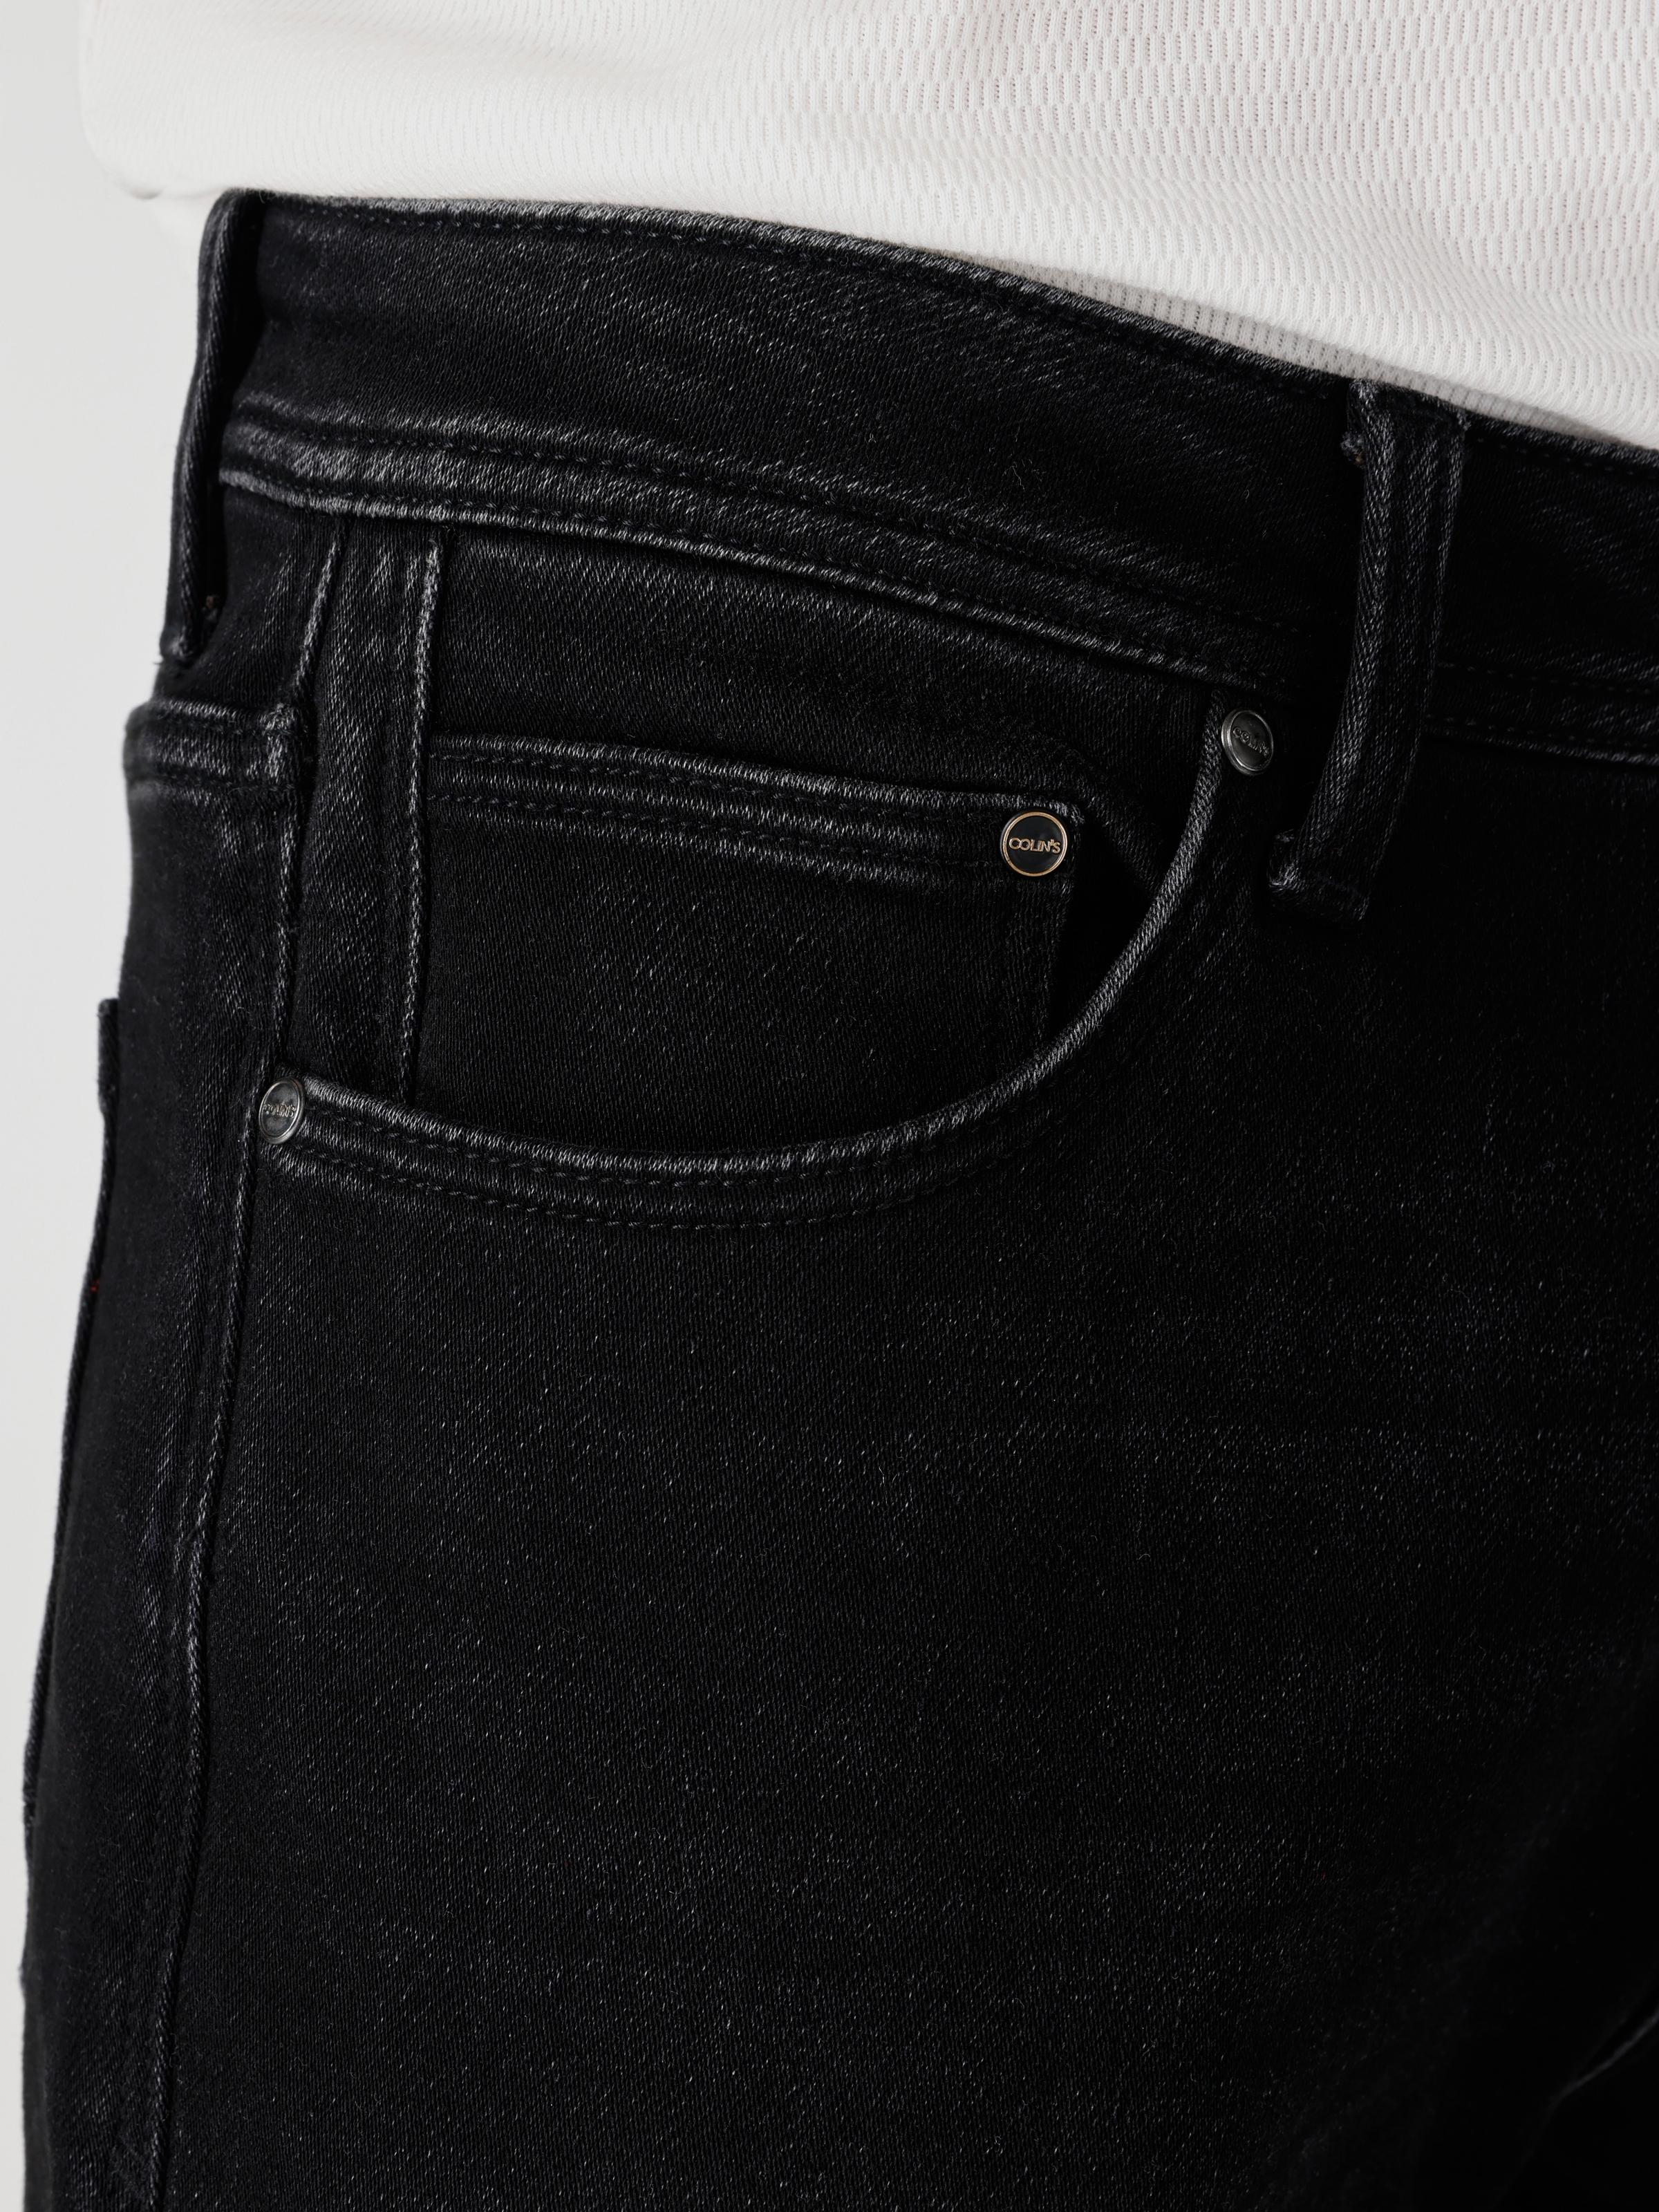 Afișați detalii pentru Pantaloni De Barbati Negru Regular Fit 045 DAVID CL1065767